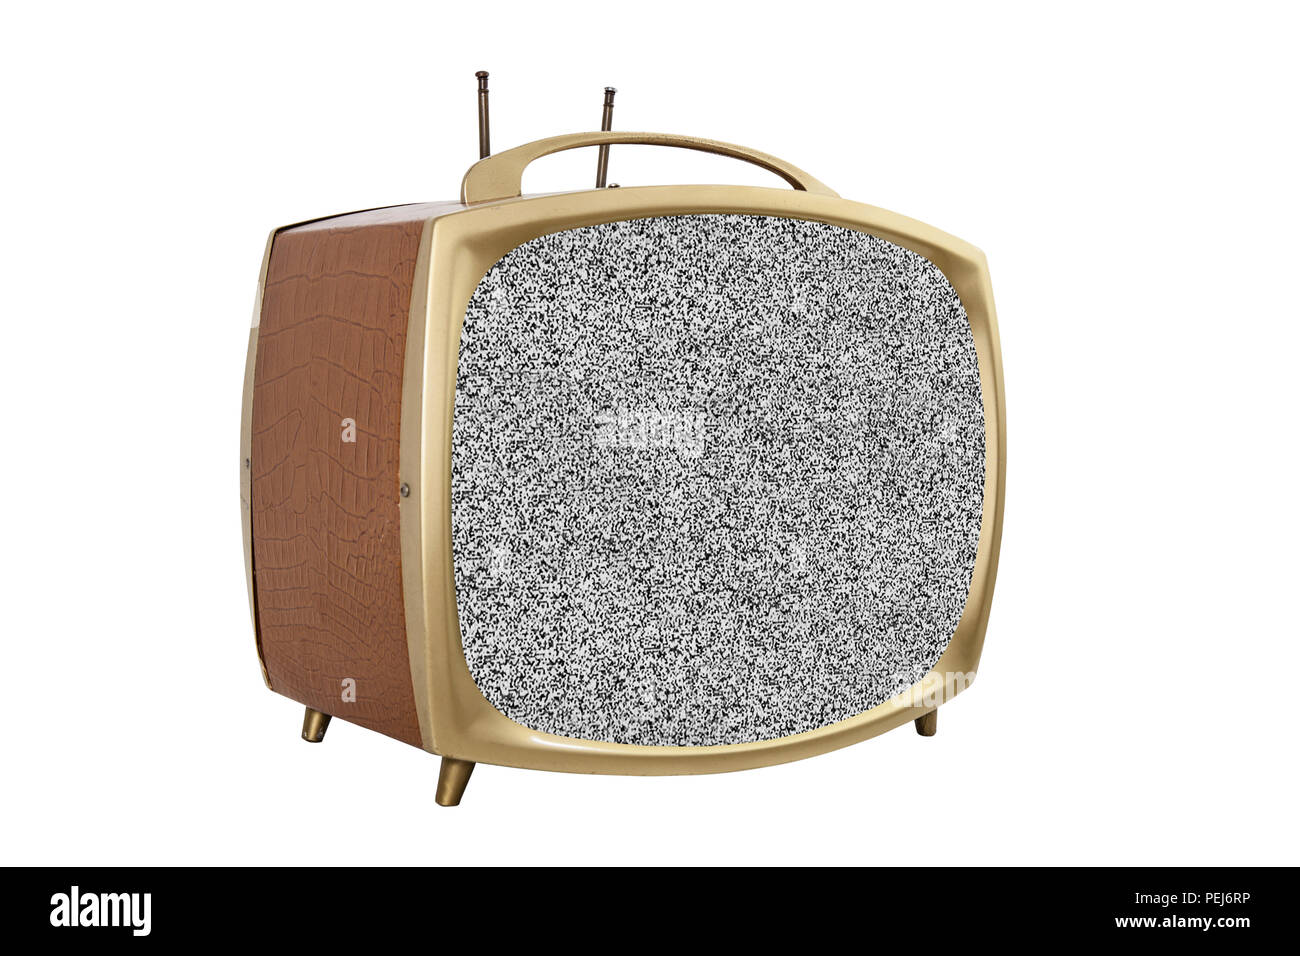 Retrò degli anni cinquanta televisore portatile con schermo statico. Foto Stock